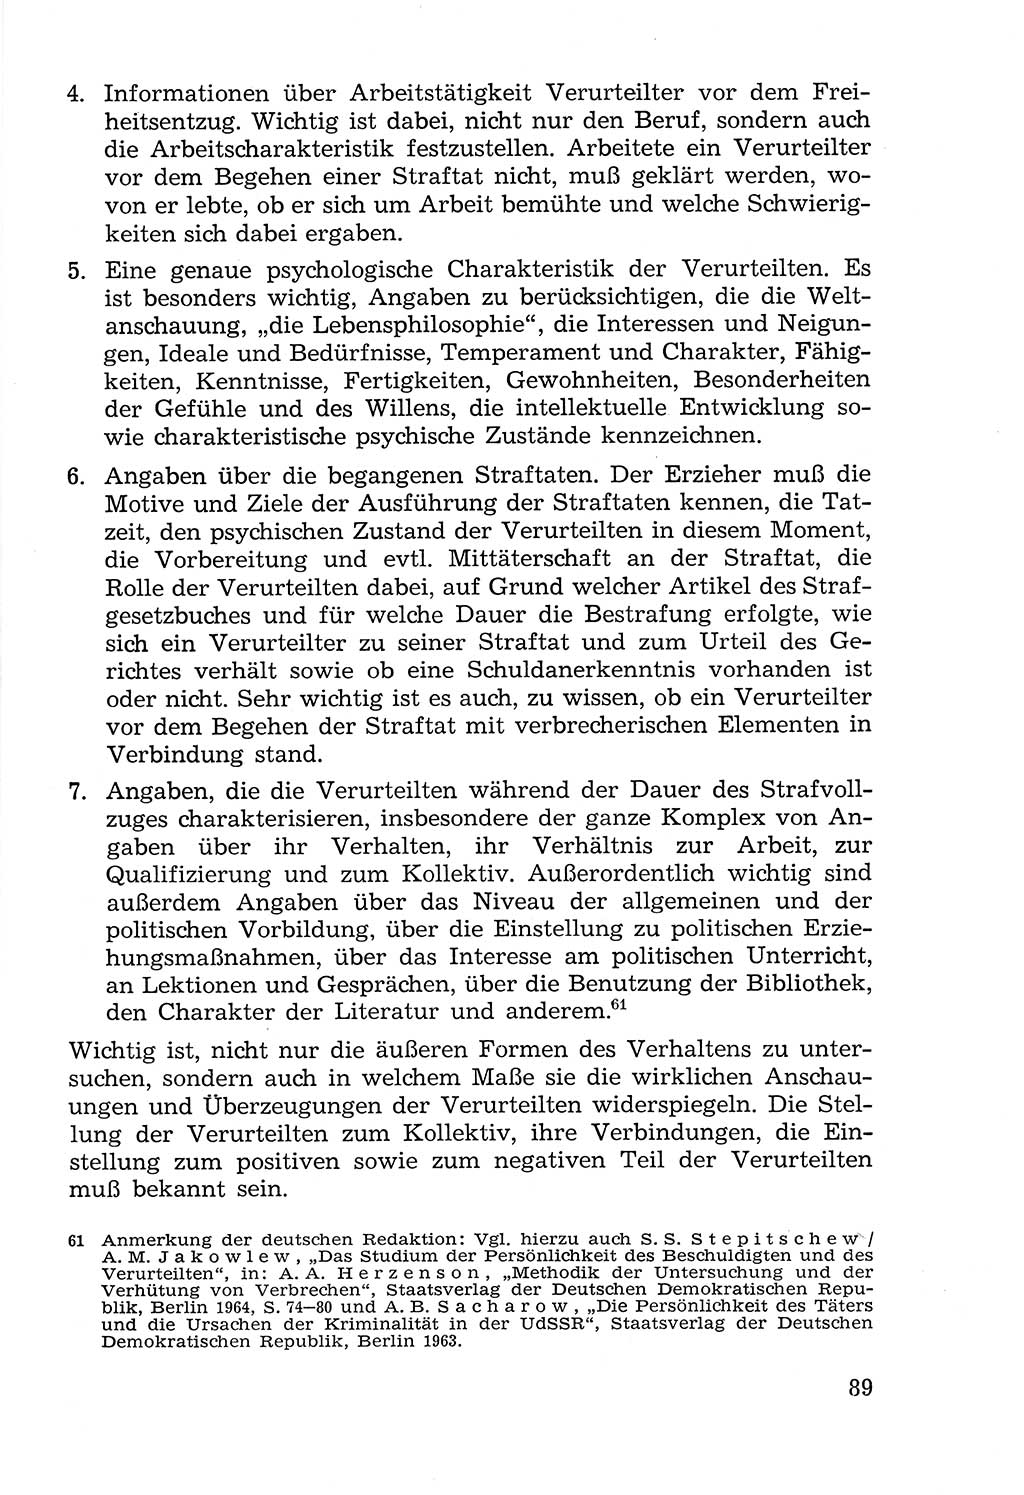 Lehrbuch der Strafvollzugspädagogik [Deutsche Demokratische Republik (DDR)] 1969, Seite 89 (Lb. SV-Pd. DDR 1969, S. 89)